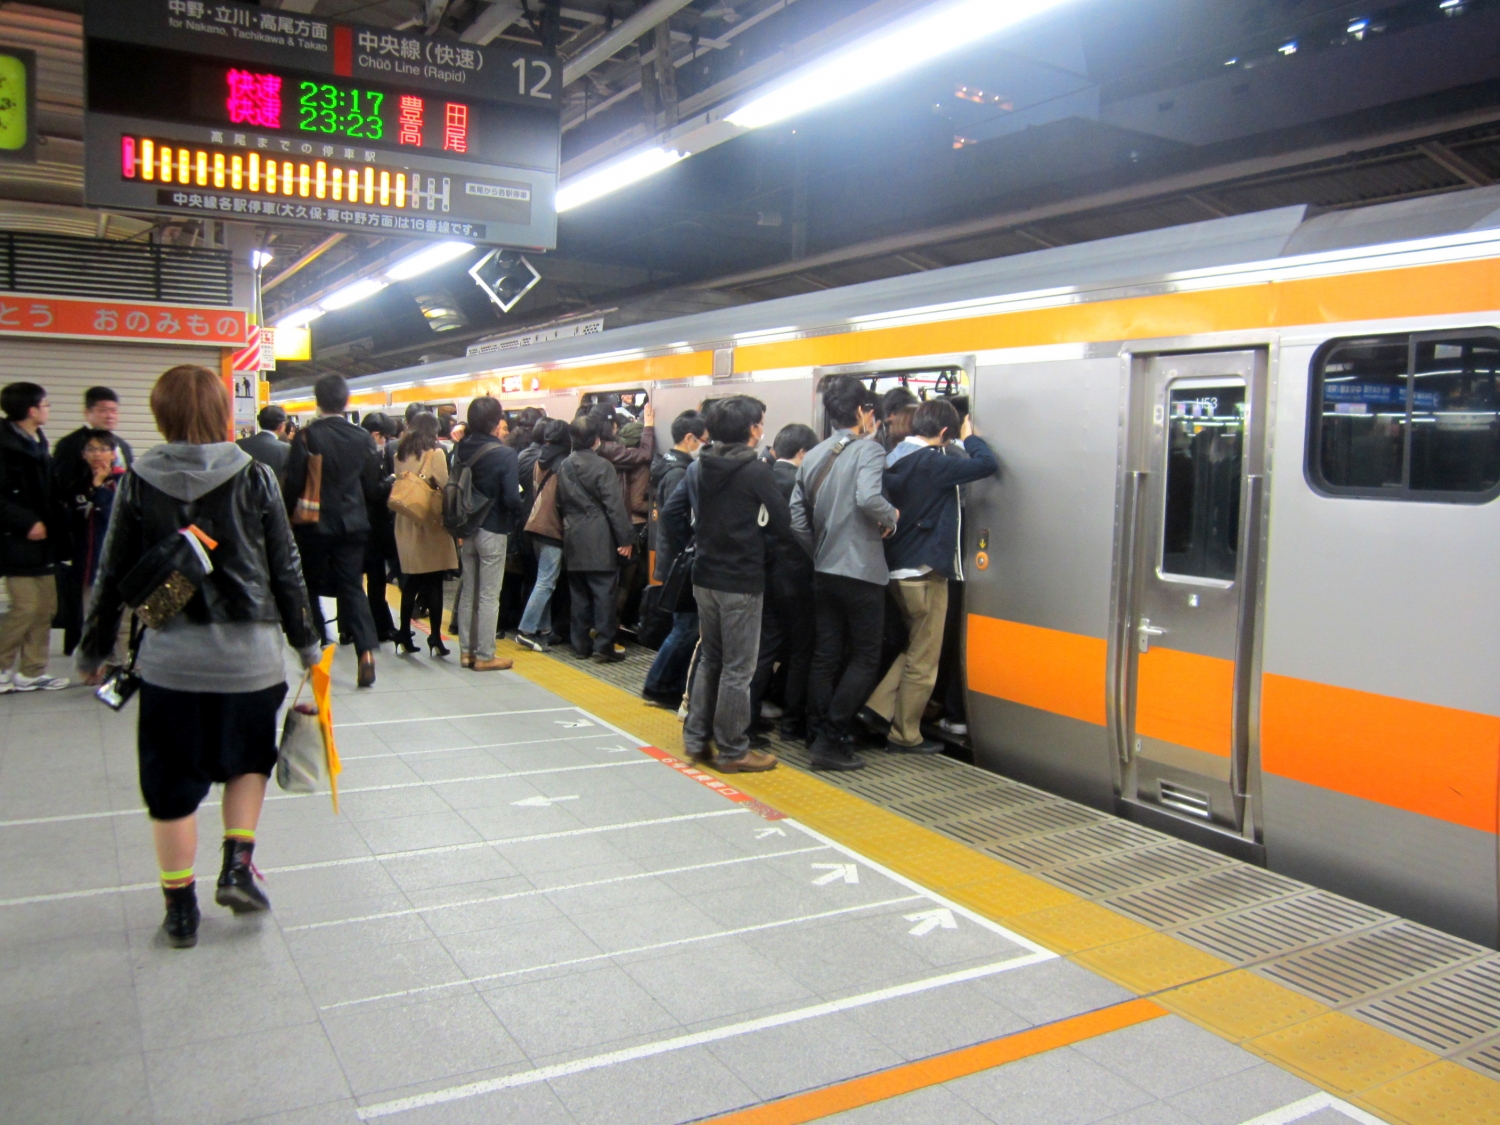 [VIDEO] Những chuyến tàu điện ngầm "đông không chỗ đứng" ở Tokyo